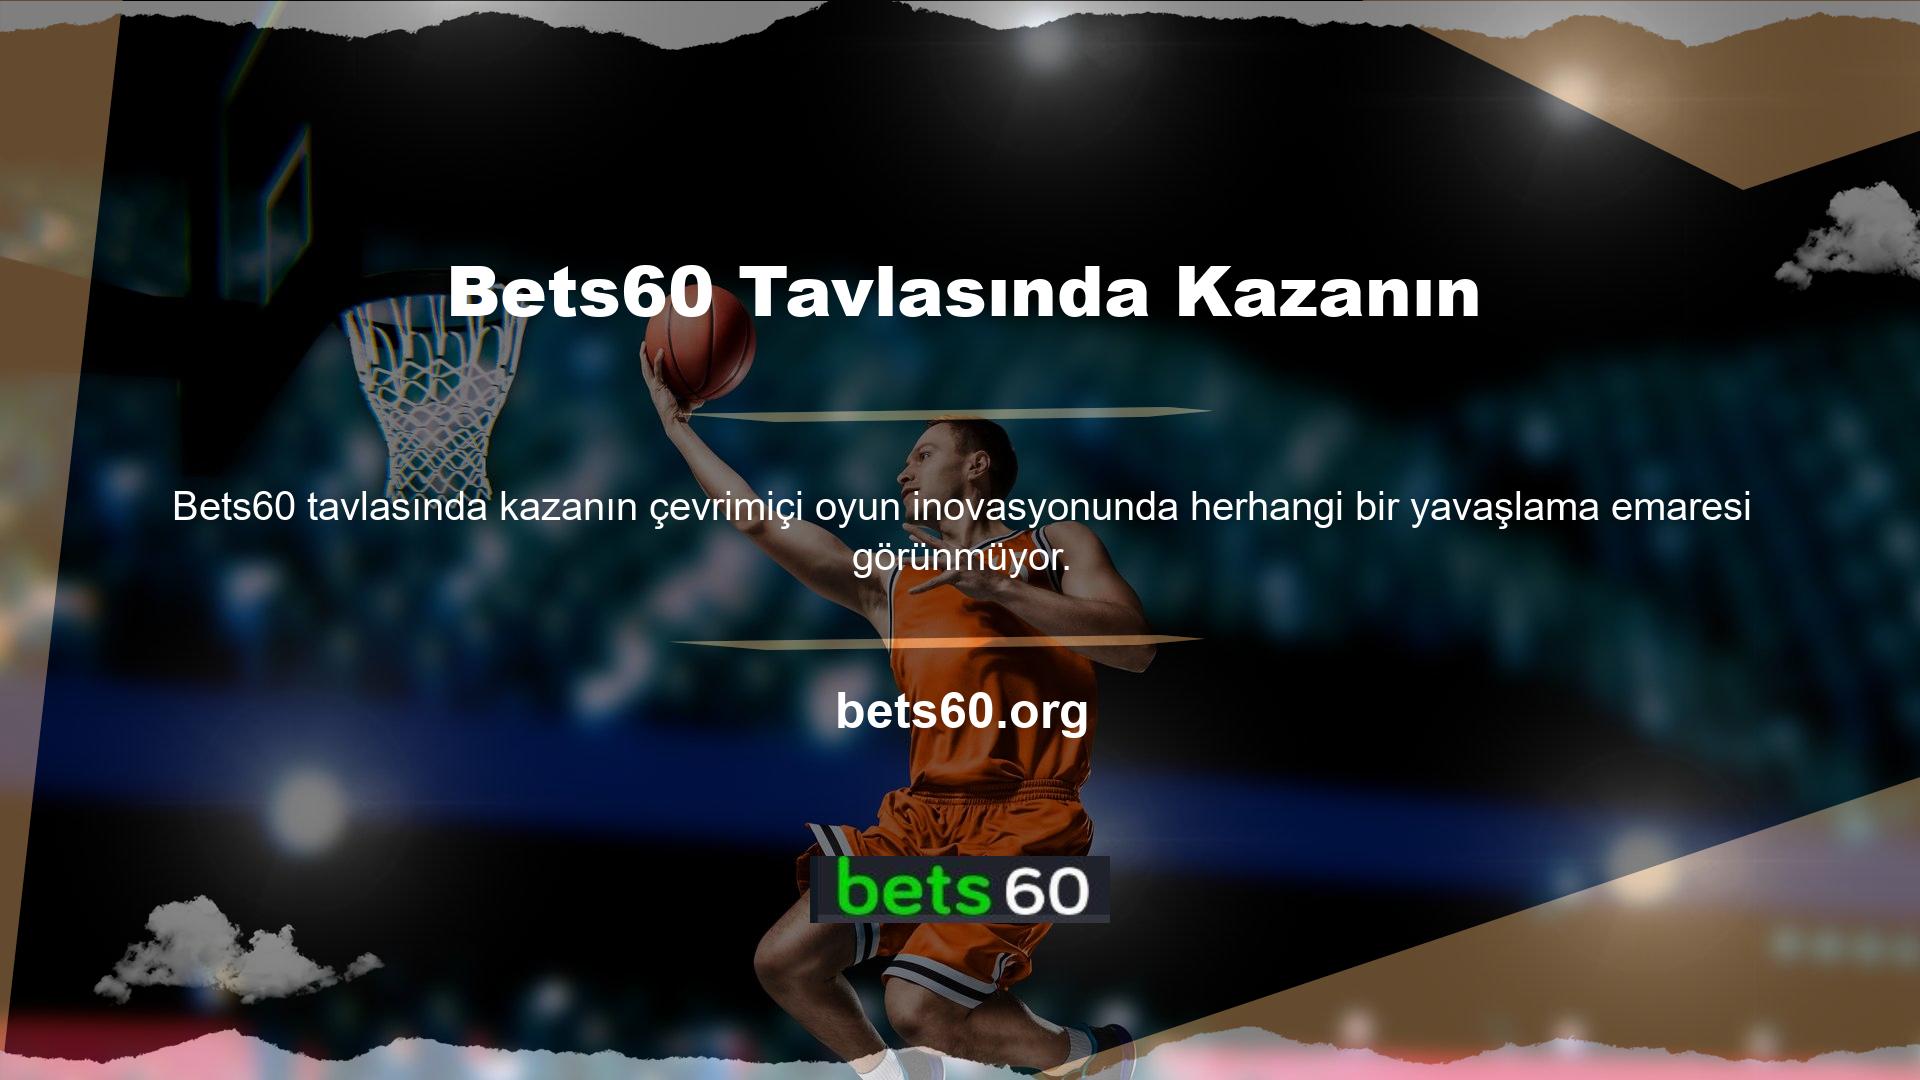 Bets60 ayrıca Türk kültürünü yansıtan tavla oyunları da sunuyor